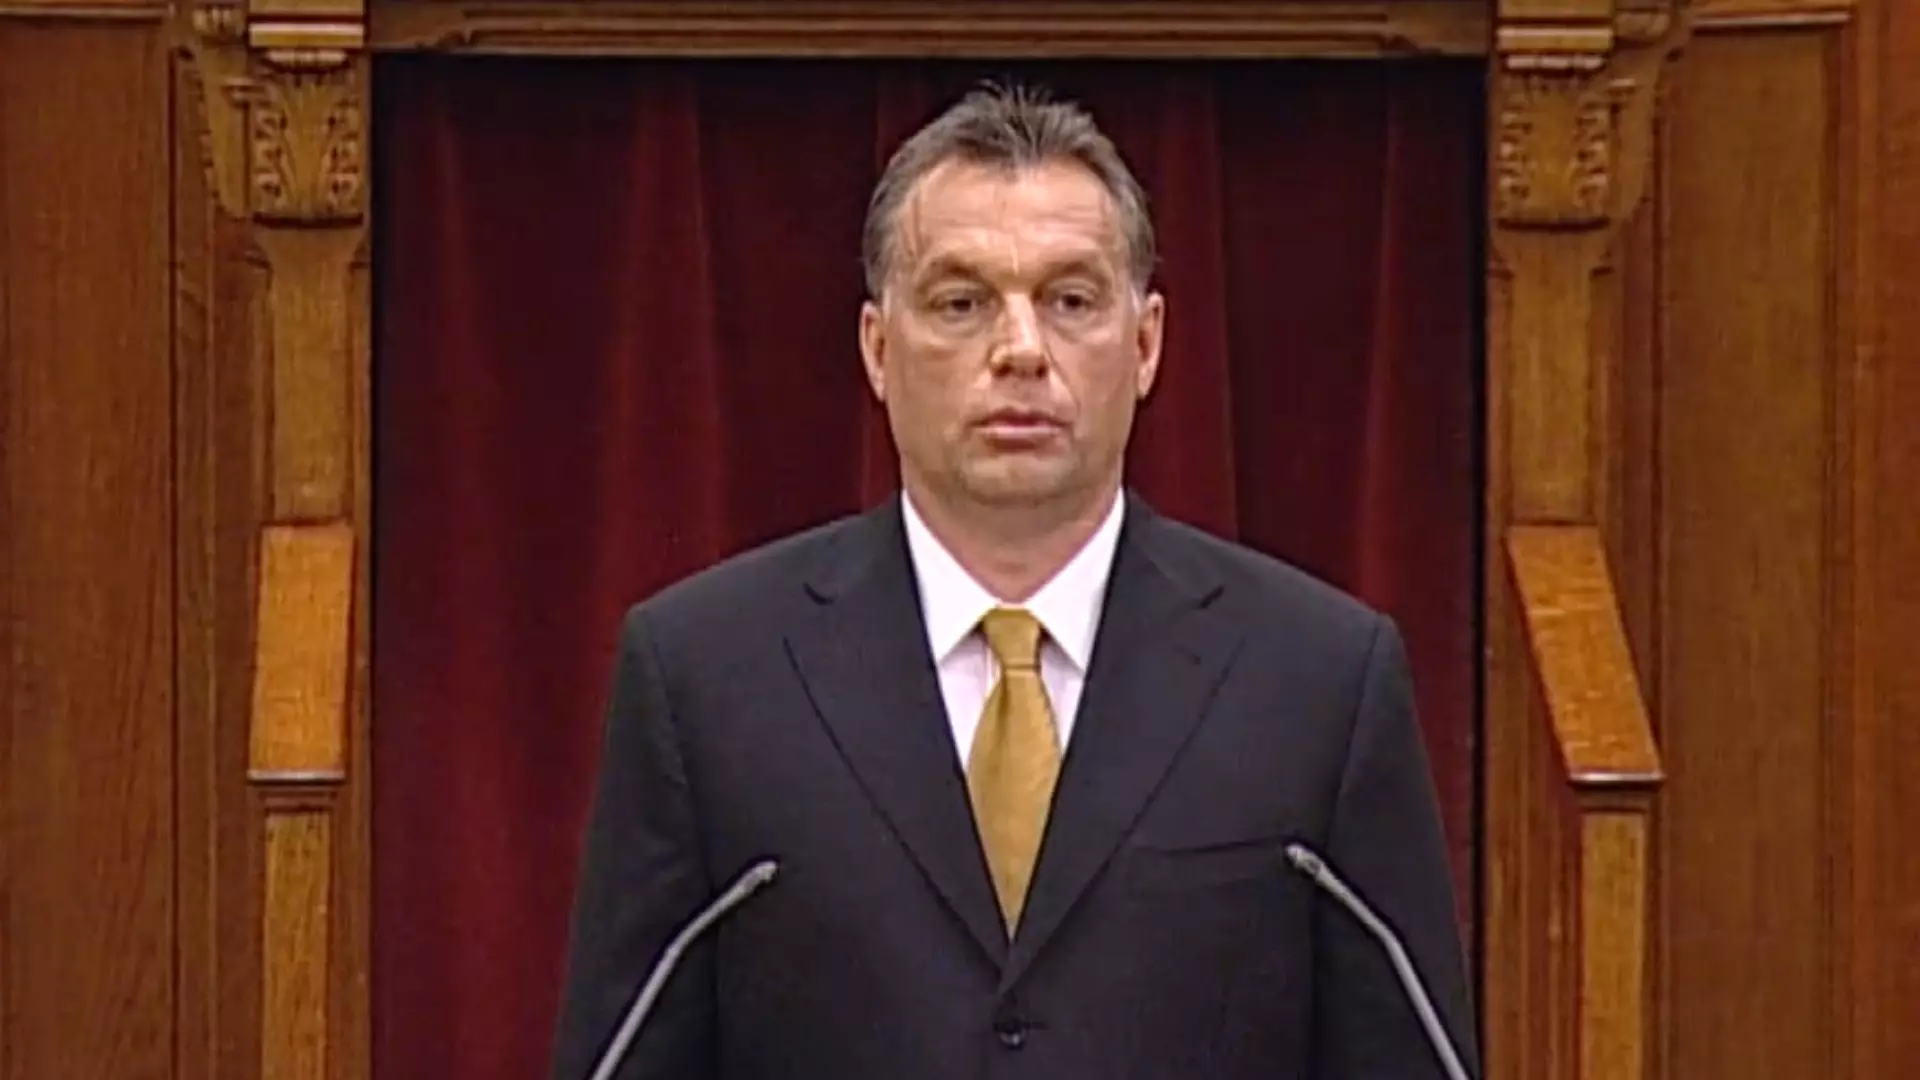 Nagy nap volt 14 éve: Orbán Viktor felesküdött miniszterelnöknek, Kövér László levágatta a haját